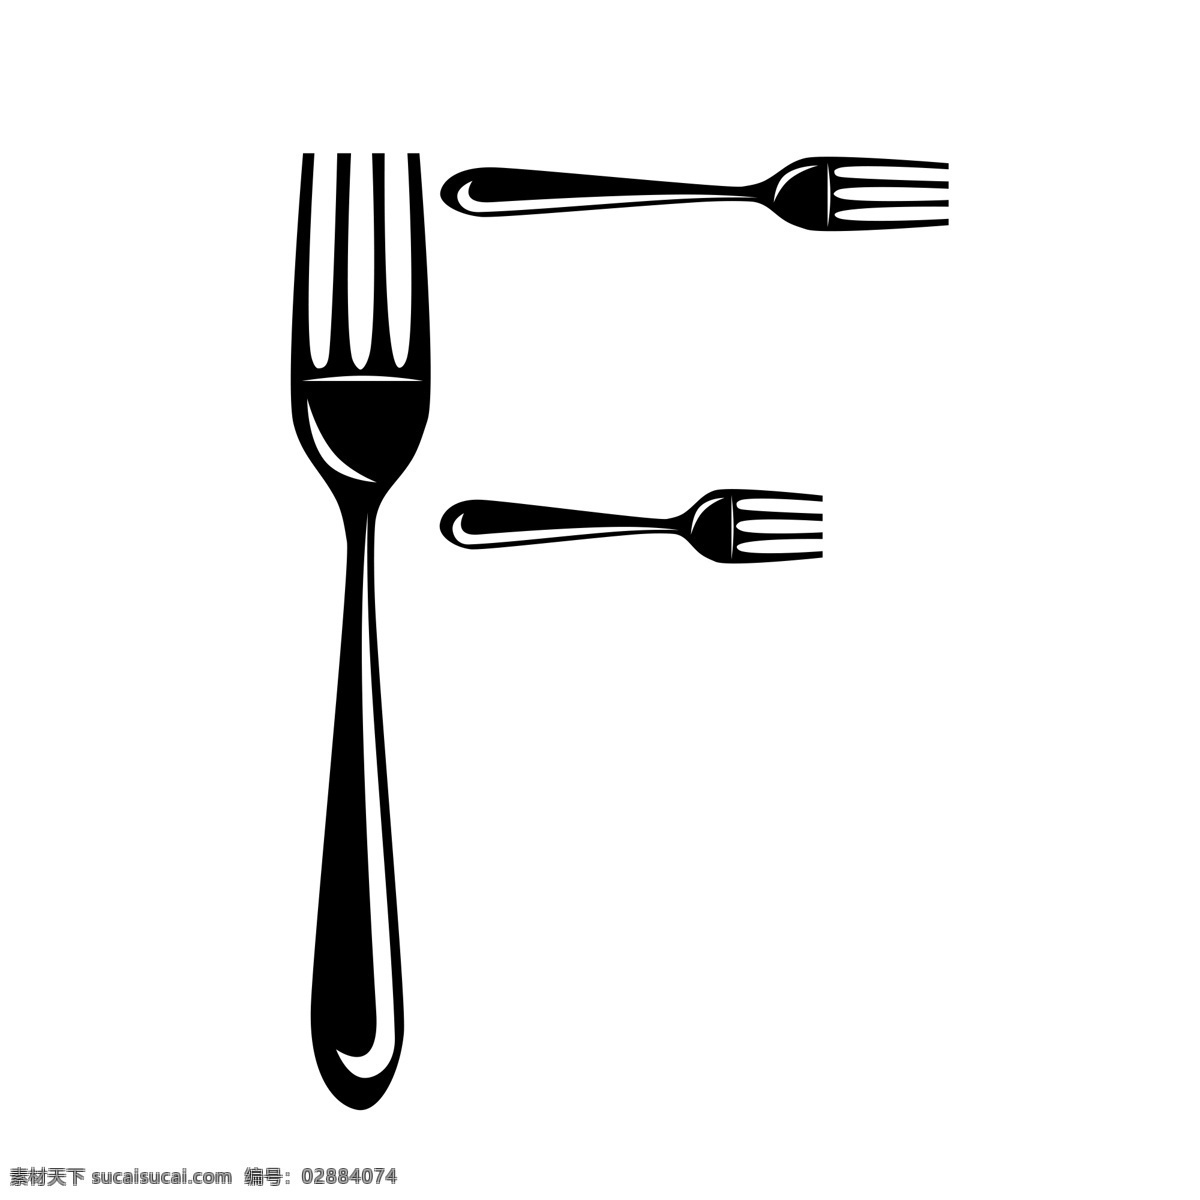 矢量图 字母 造型 黑色 叉子 餐具 美食 器具 西方餐具 logo 菜单 餐厅 字母造型 钢笔图层